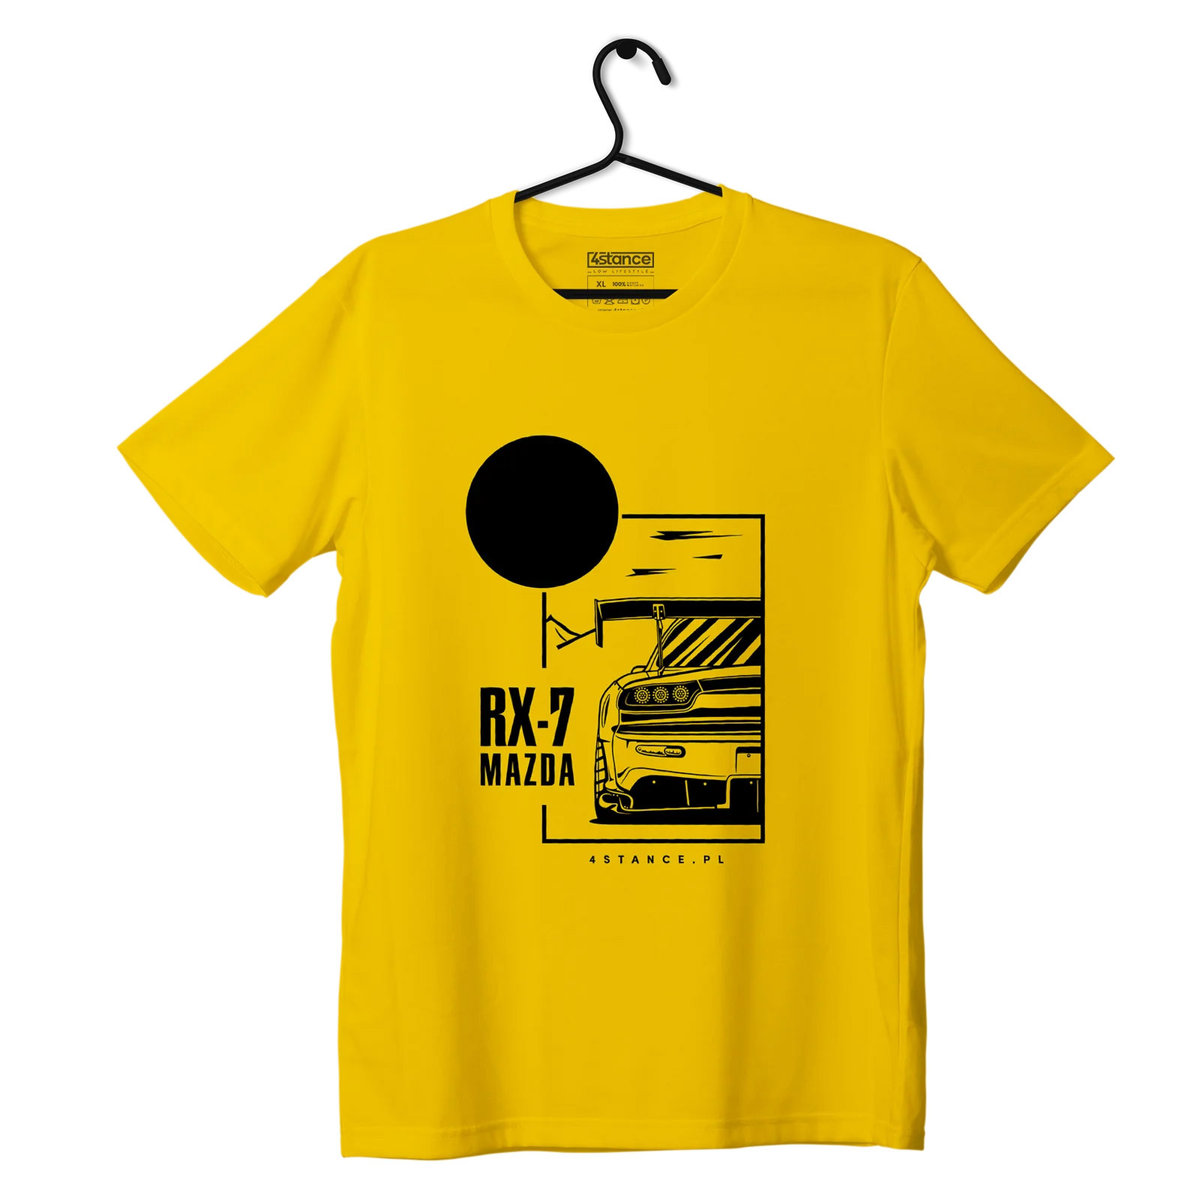 Zdjęcia - Odzież motocyklowa Mazda T-shirt koszulka  RX-7 żółta-3XL 